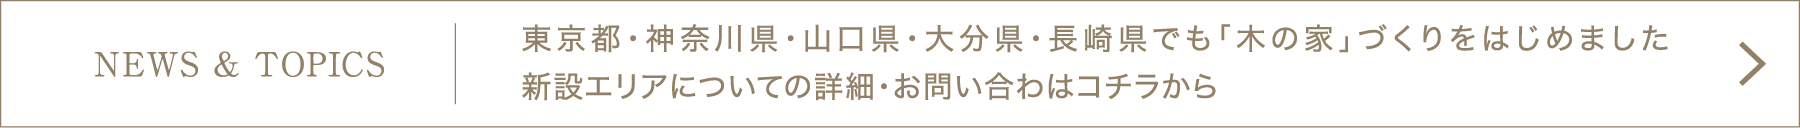 [NEWS & TOPIC]東京都・神奈川県・山口県・大分県・長崎県でも「木の家」づくりをはじめました。新設エリアについての詳細・お問い合わはコチラから